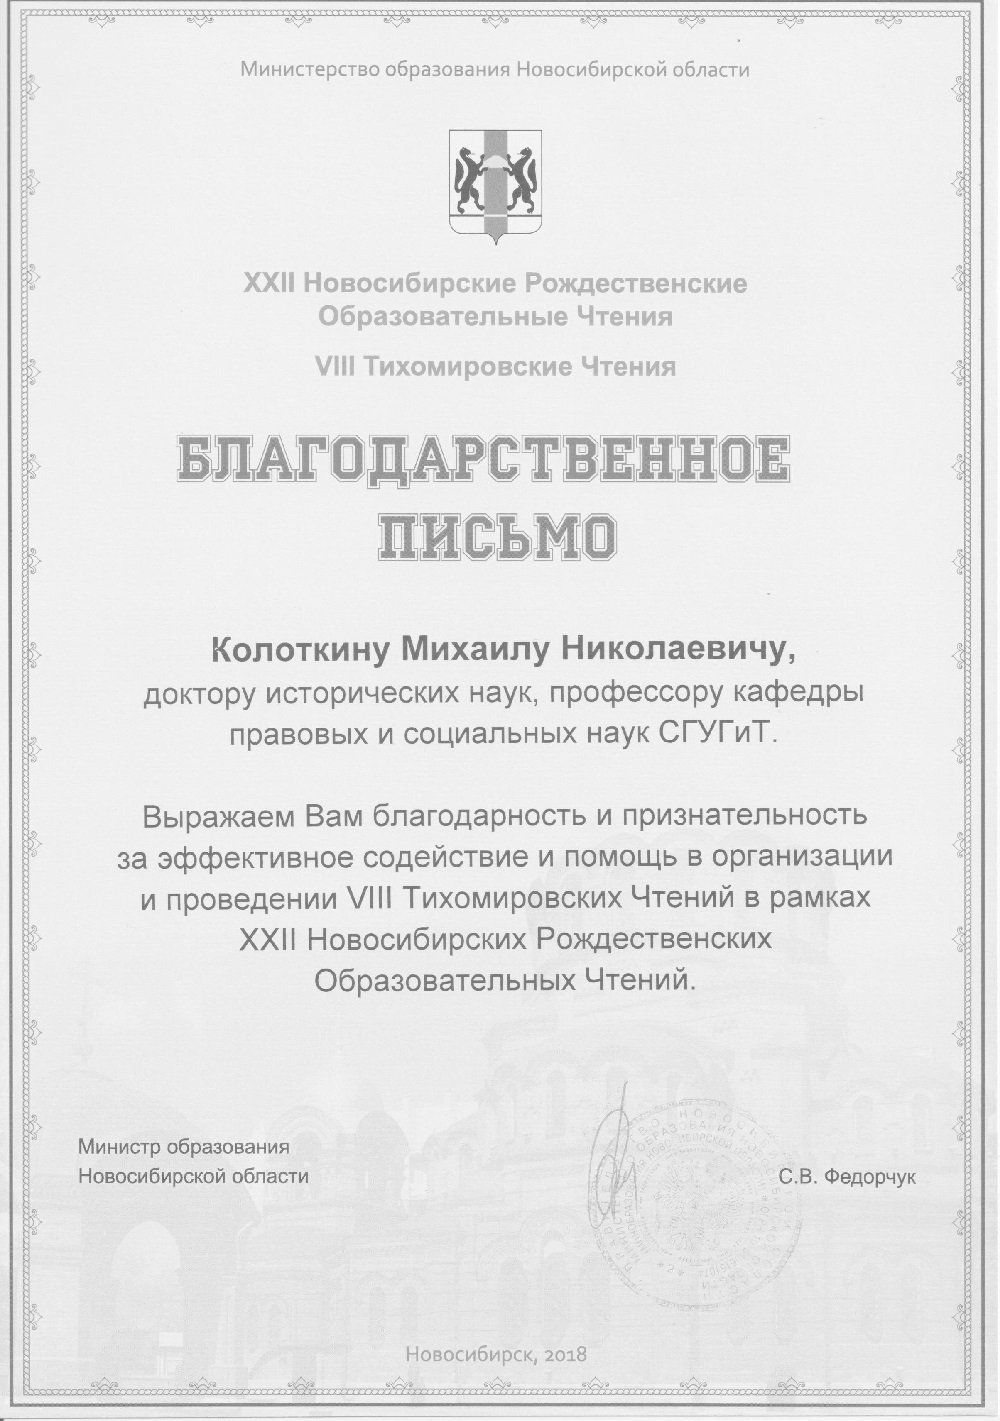 Учреждение образования новосибирской области